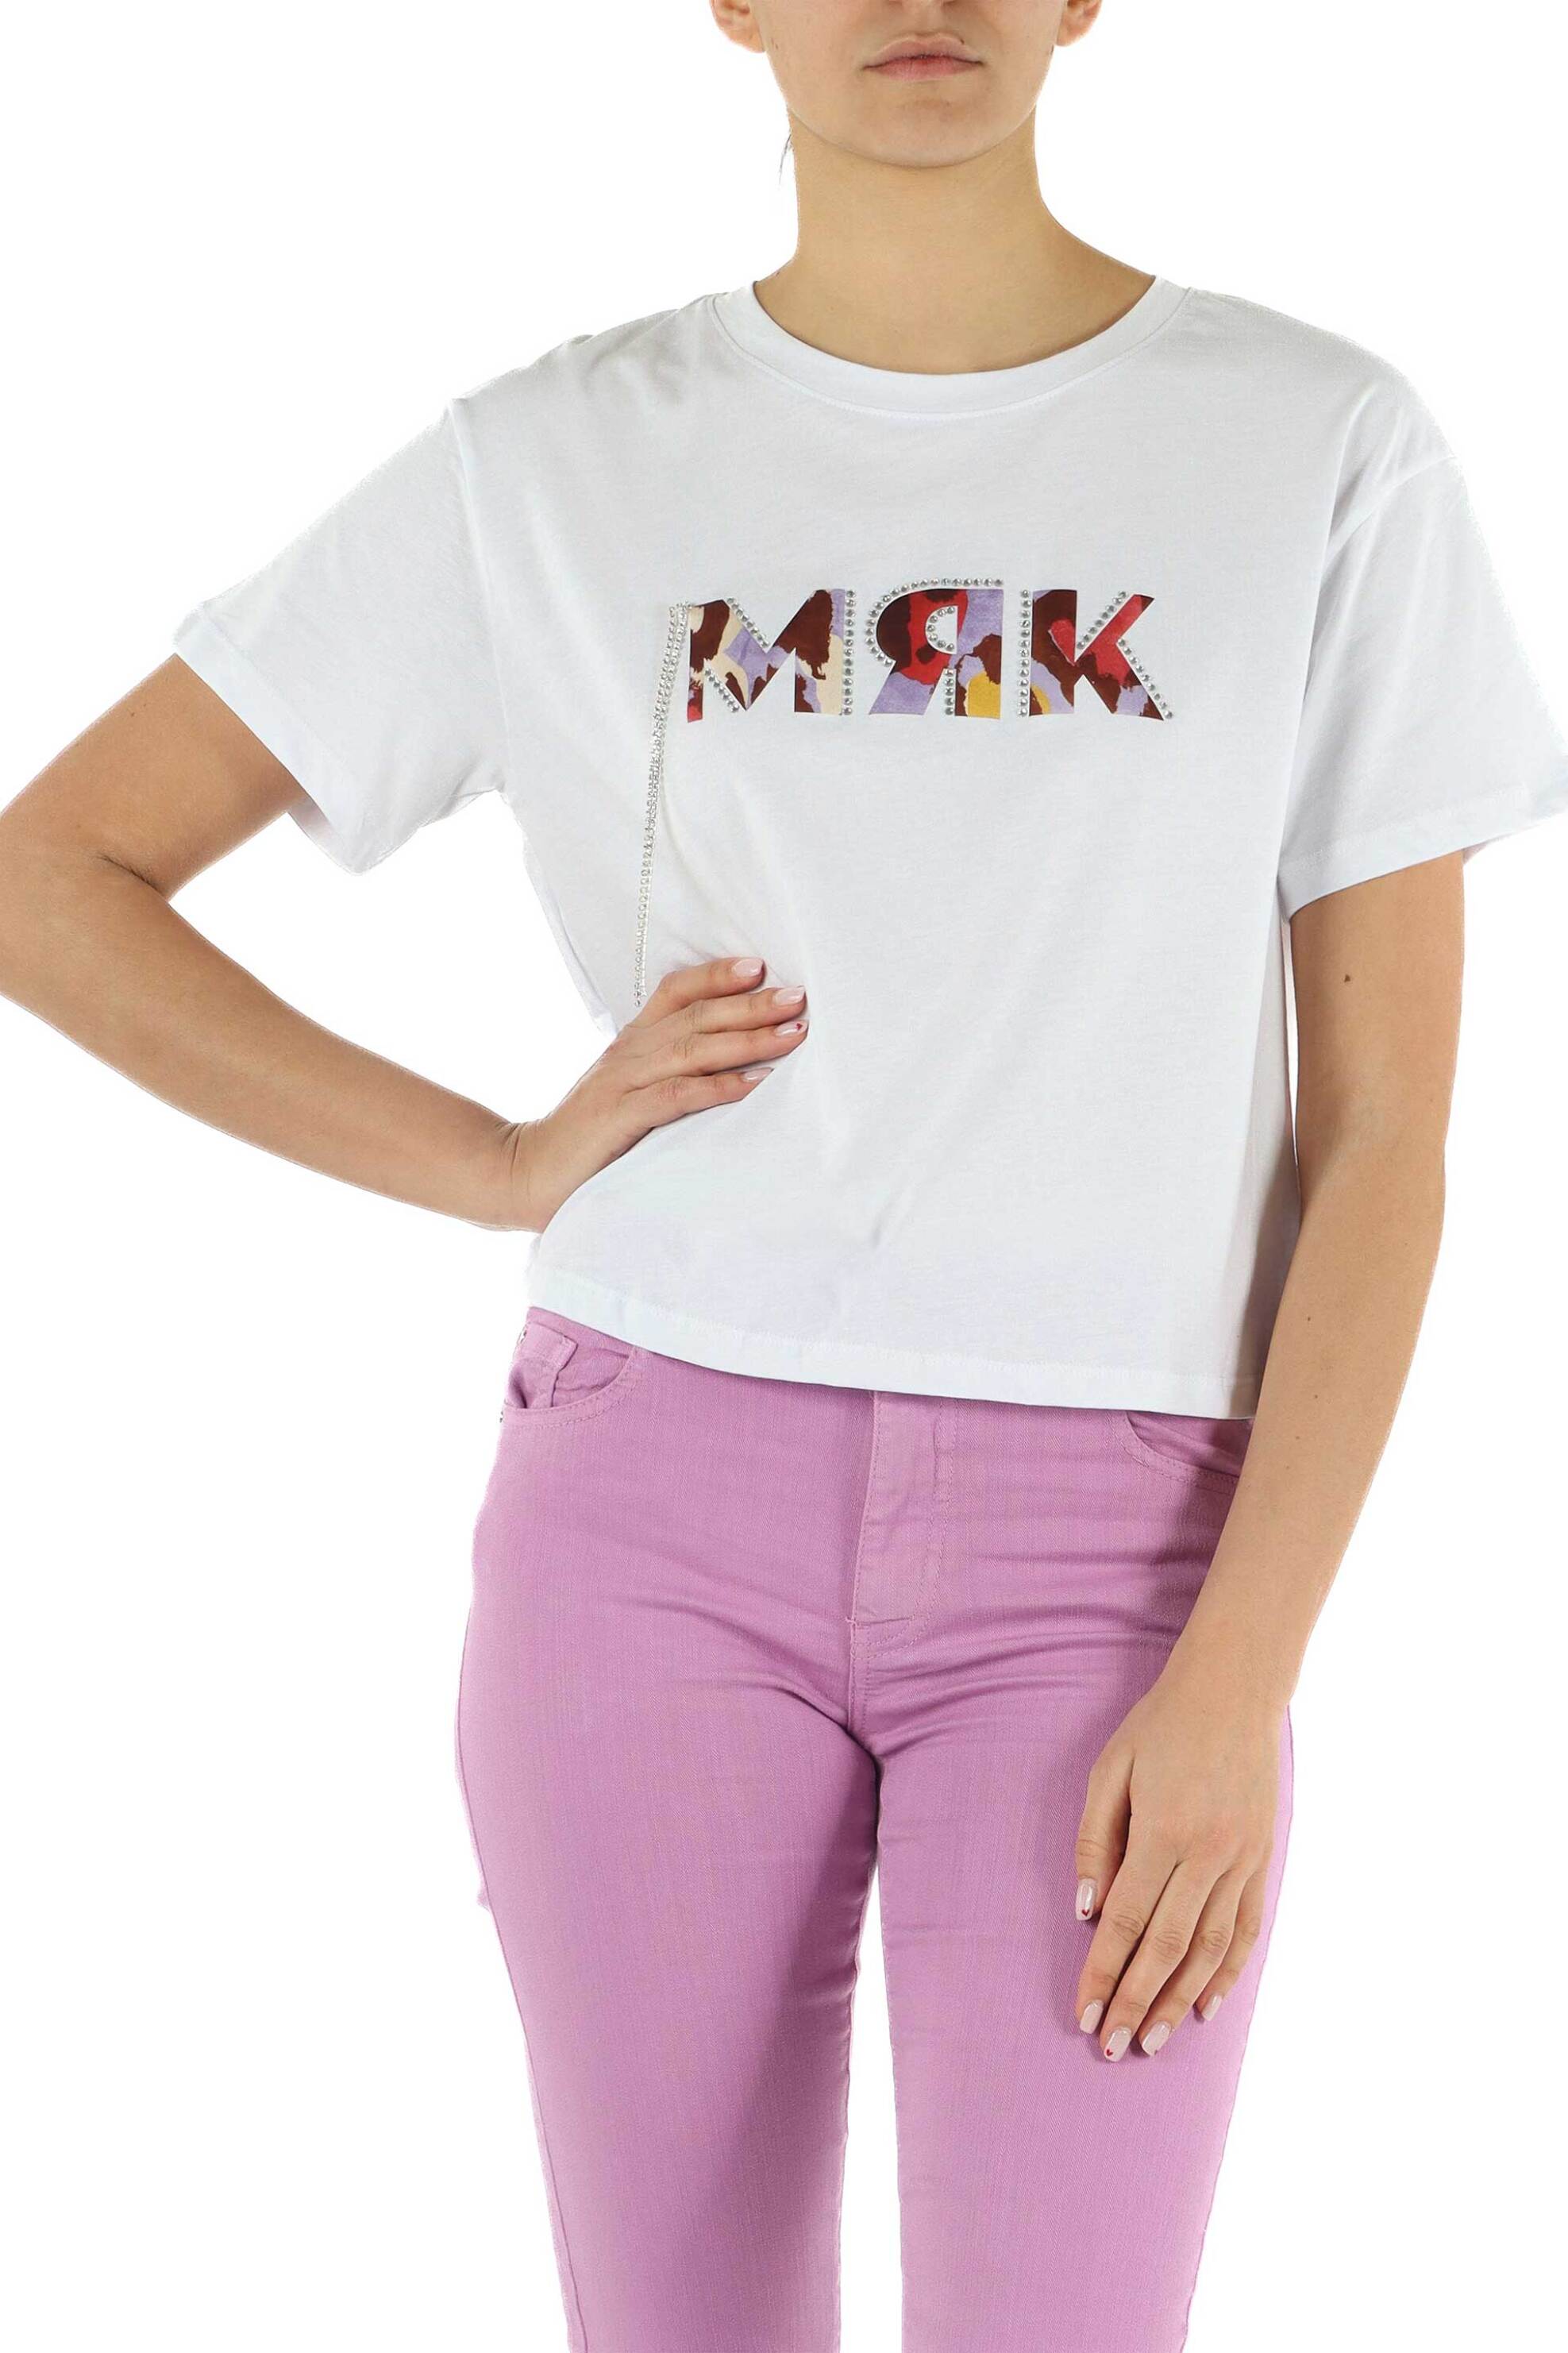 Γυναικεία Ρούχα & Αξεσουάρ > Γυναικεία Ρούχα > Γυναικεία Τοπ > Γυναικεία T-Shirts Markup γυναικείο βαμβακερό T-shirt μονόχρωμο με πολύχρωμο μονόγραμμα - MW661017 Λευκό